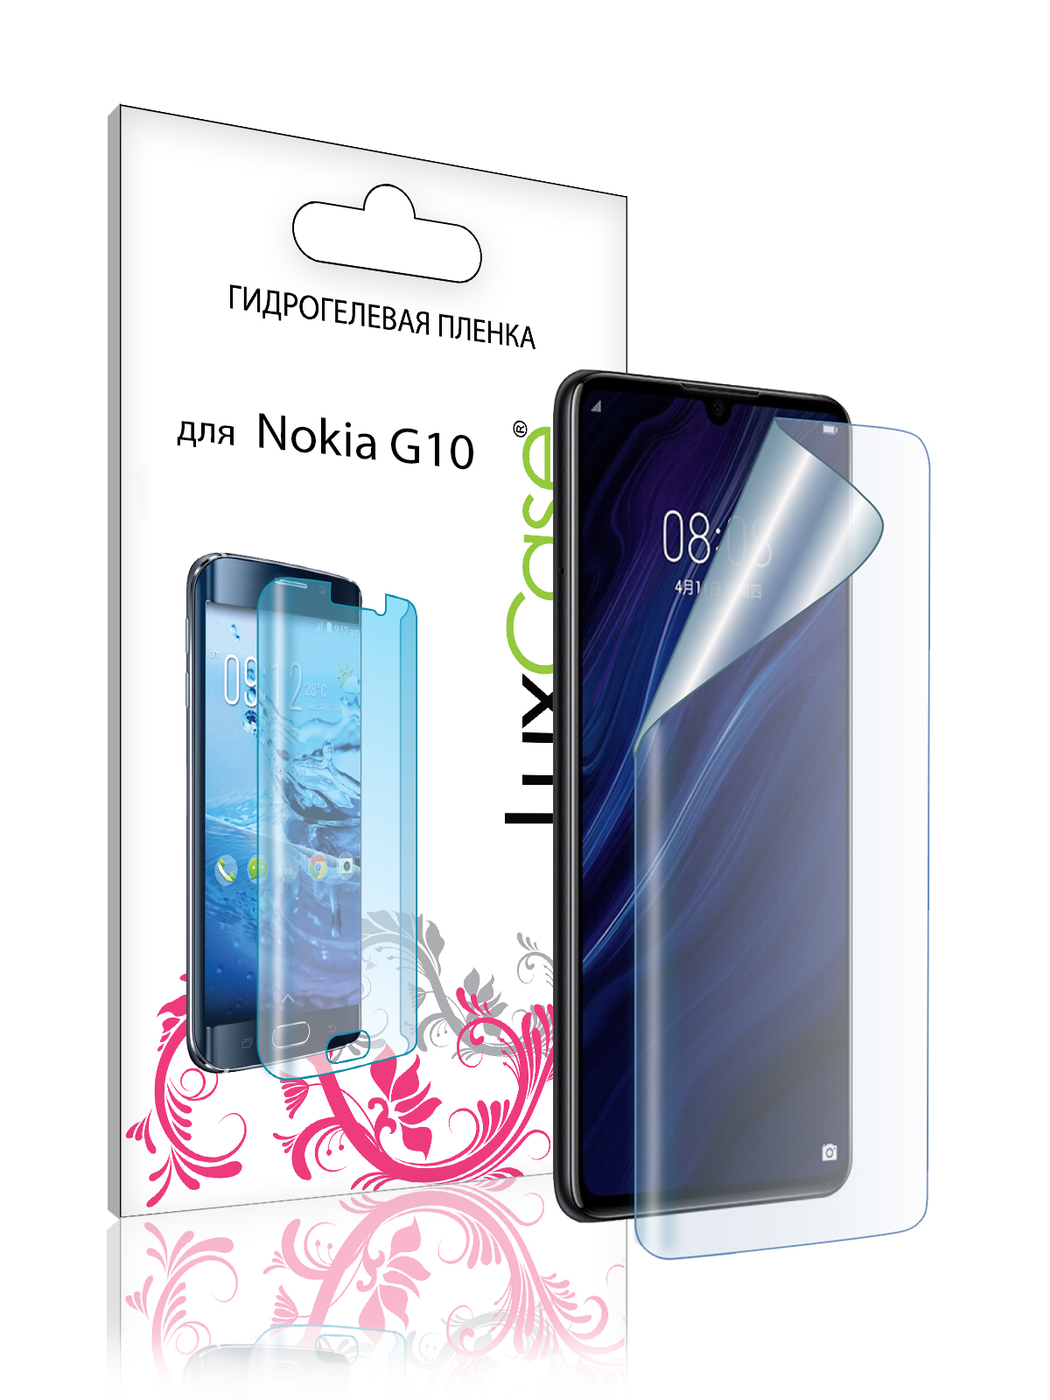 Гидрогелевая пленка LuxCase для Nokia G10 Front Transparent 86389 гидрогелевая пленка с вырезом под камеру для нокиа с20 плюс nokia c20 plus